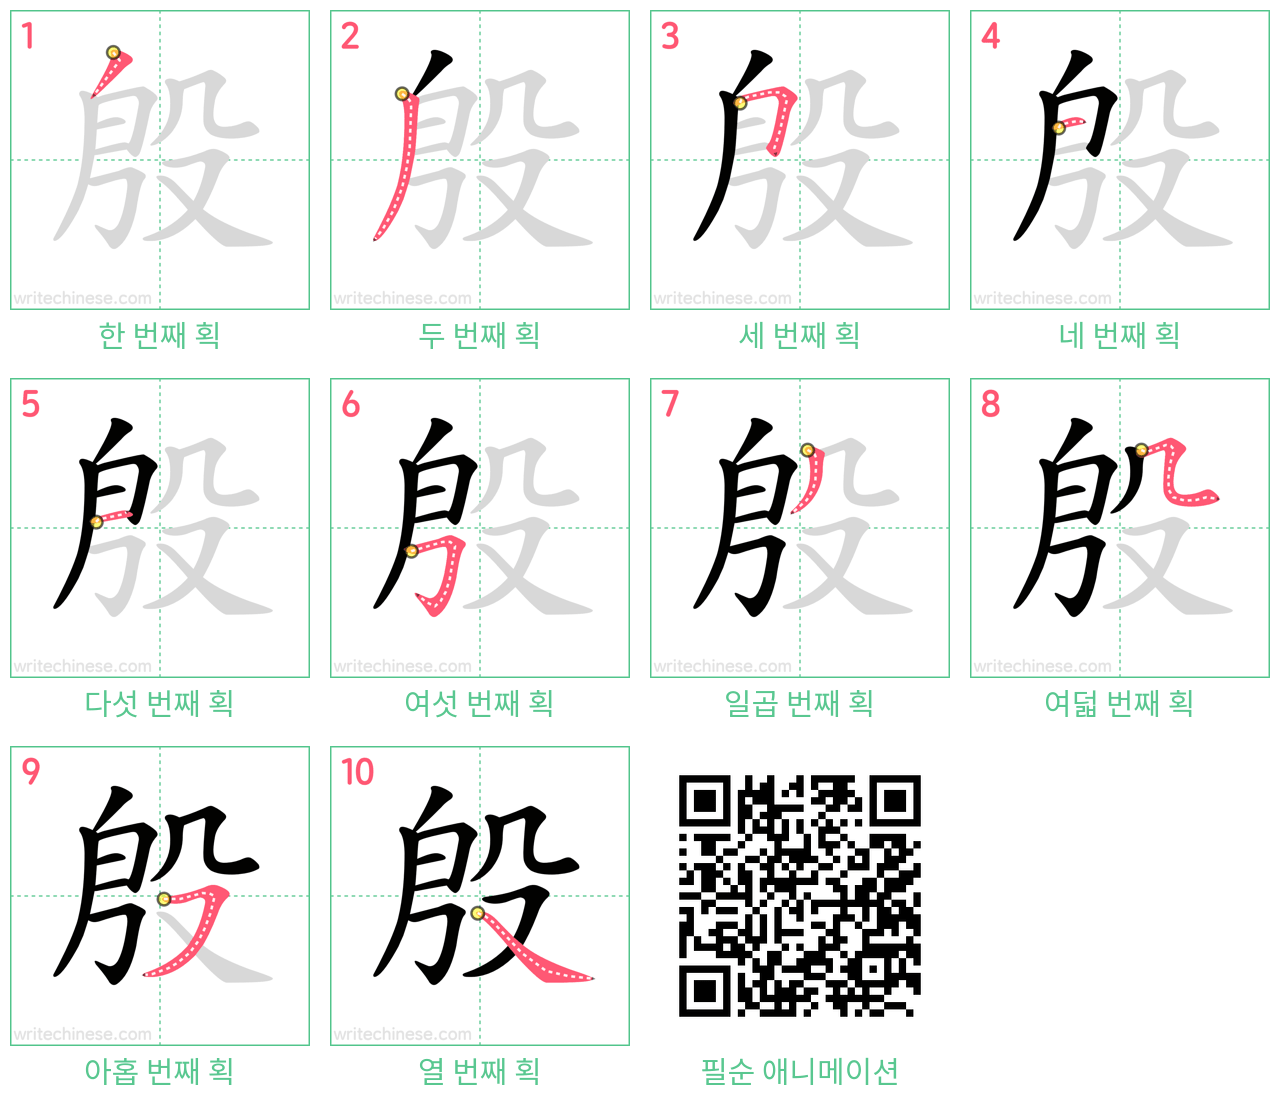 殷 step-by-step stroke order diagrams